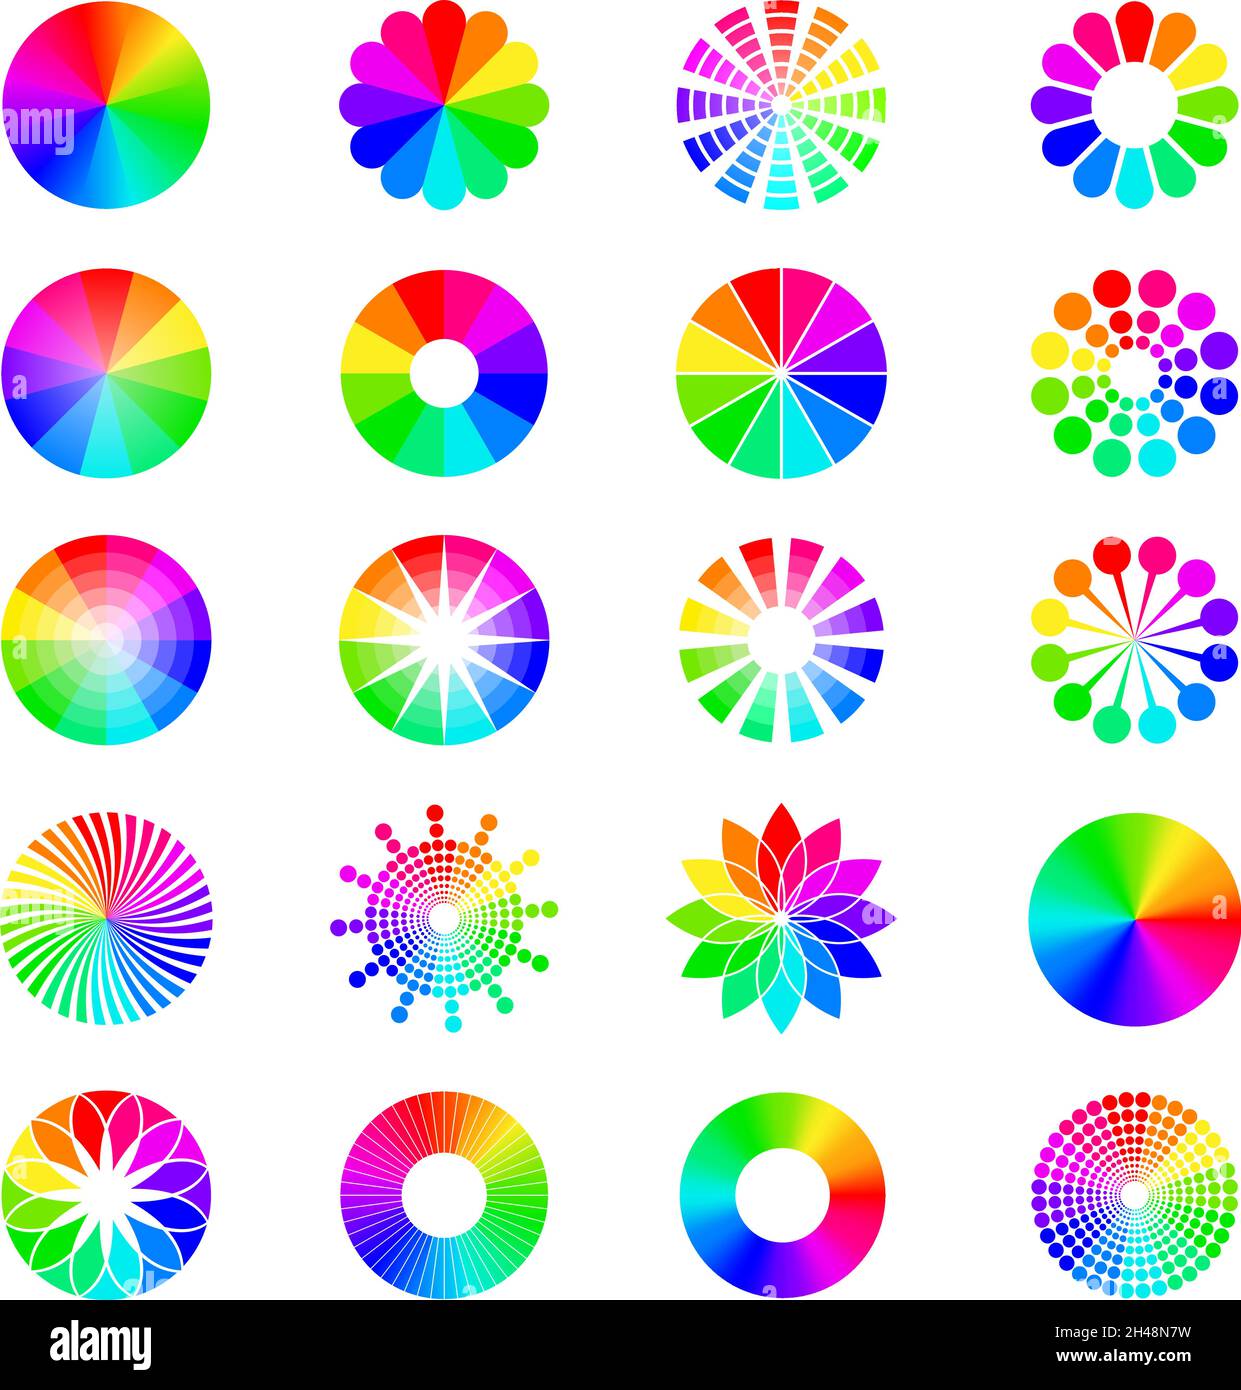 RGB-Formen. Runde selektive Räder farbige Kreise Spektrum Wellen Paletten aktuellen Vektor-Illustrationen gesetzt Stock Vektor